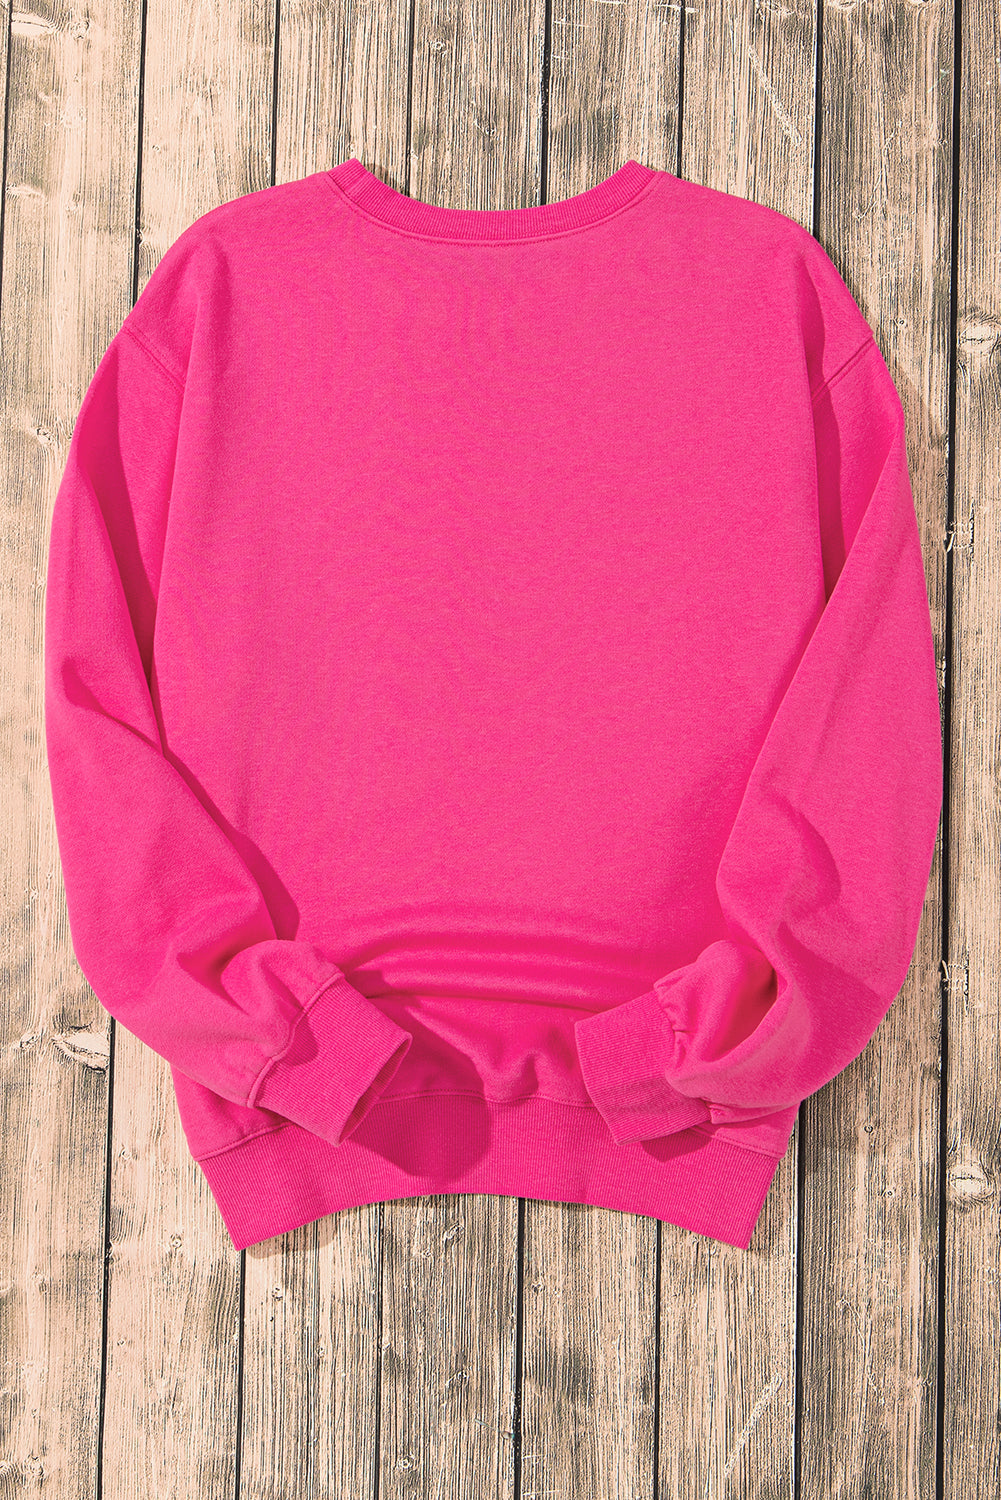 Erdbeerrosafarbenes Sweatshirt mit Kuhmotiv und Pailletten-Doppelherz-Aufnäher